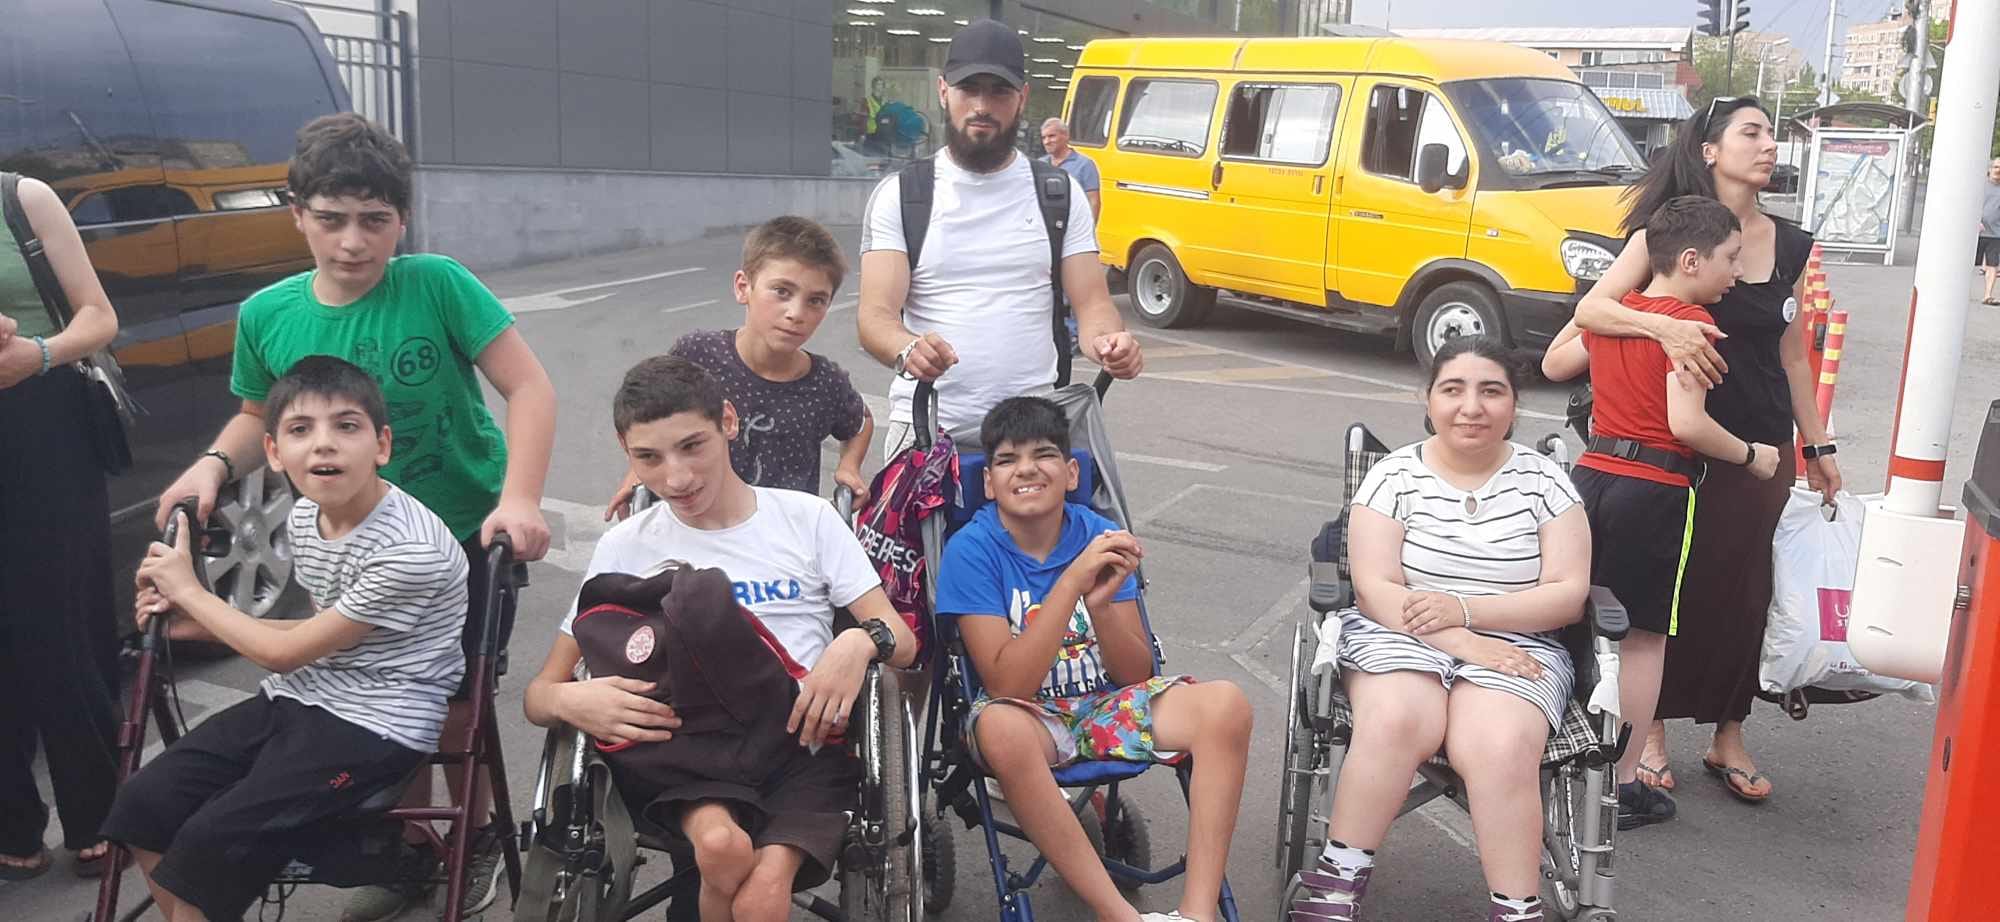 Վանաձորից Երևան հասած հաշմանդամություն ունեցող երեխաներին թույլ չեն տվել մտնել Ջրաշխարհ. կխանգարեն մյուսների հանգիստը